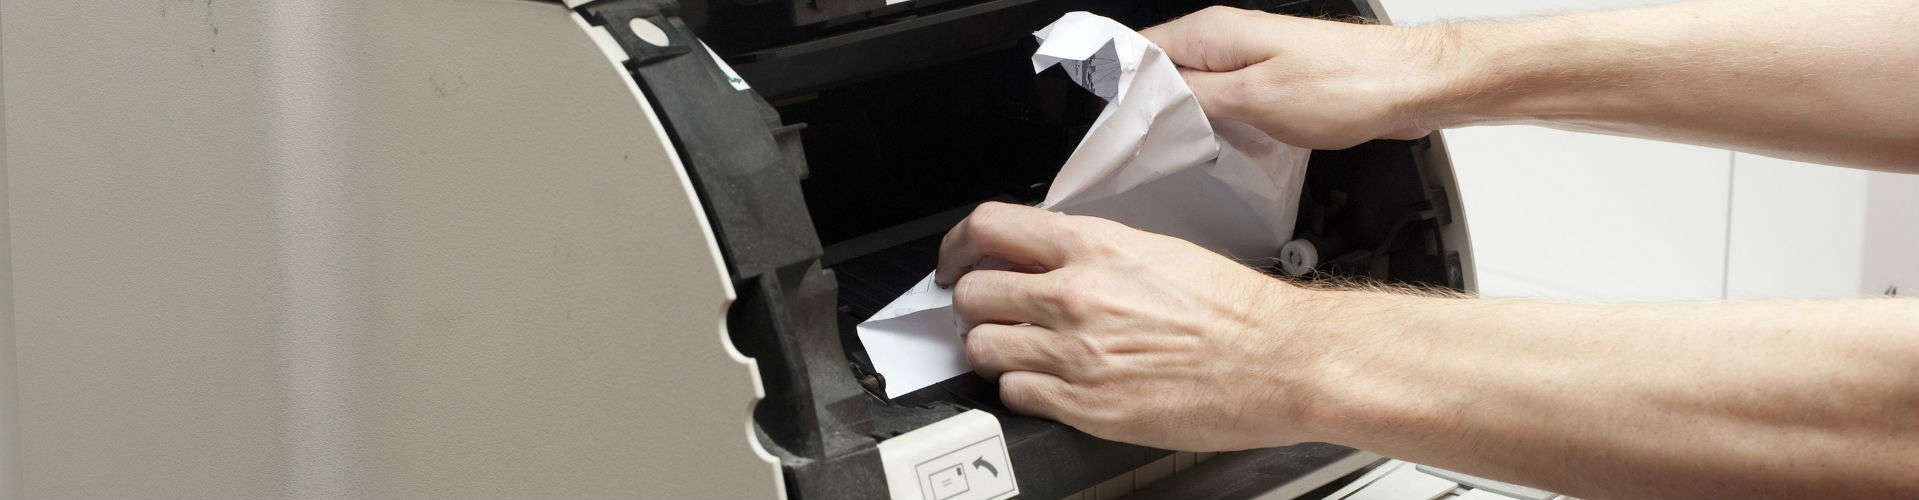 Papírelakadás nyomtatóban kép